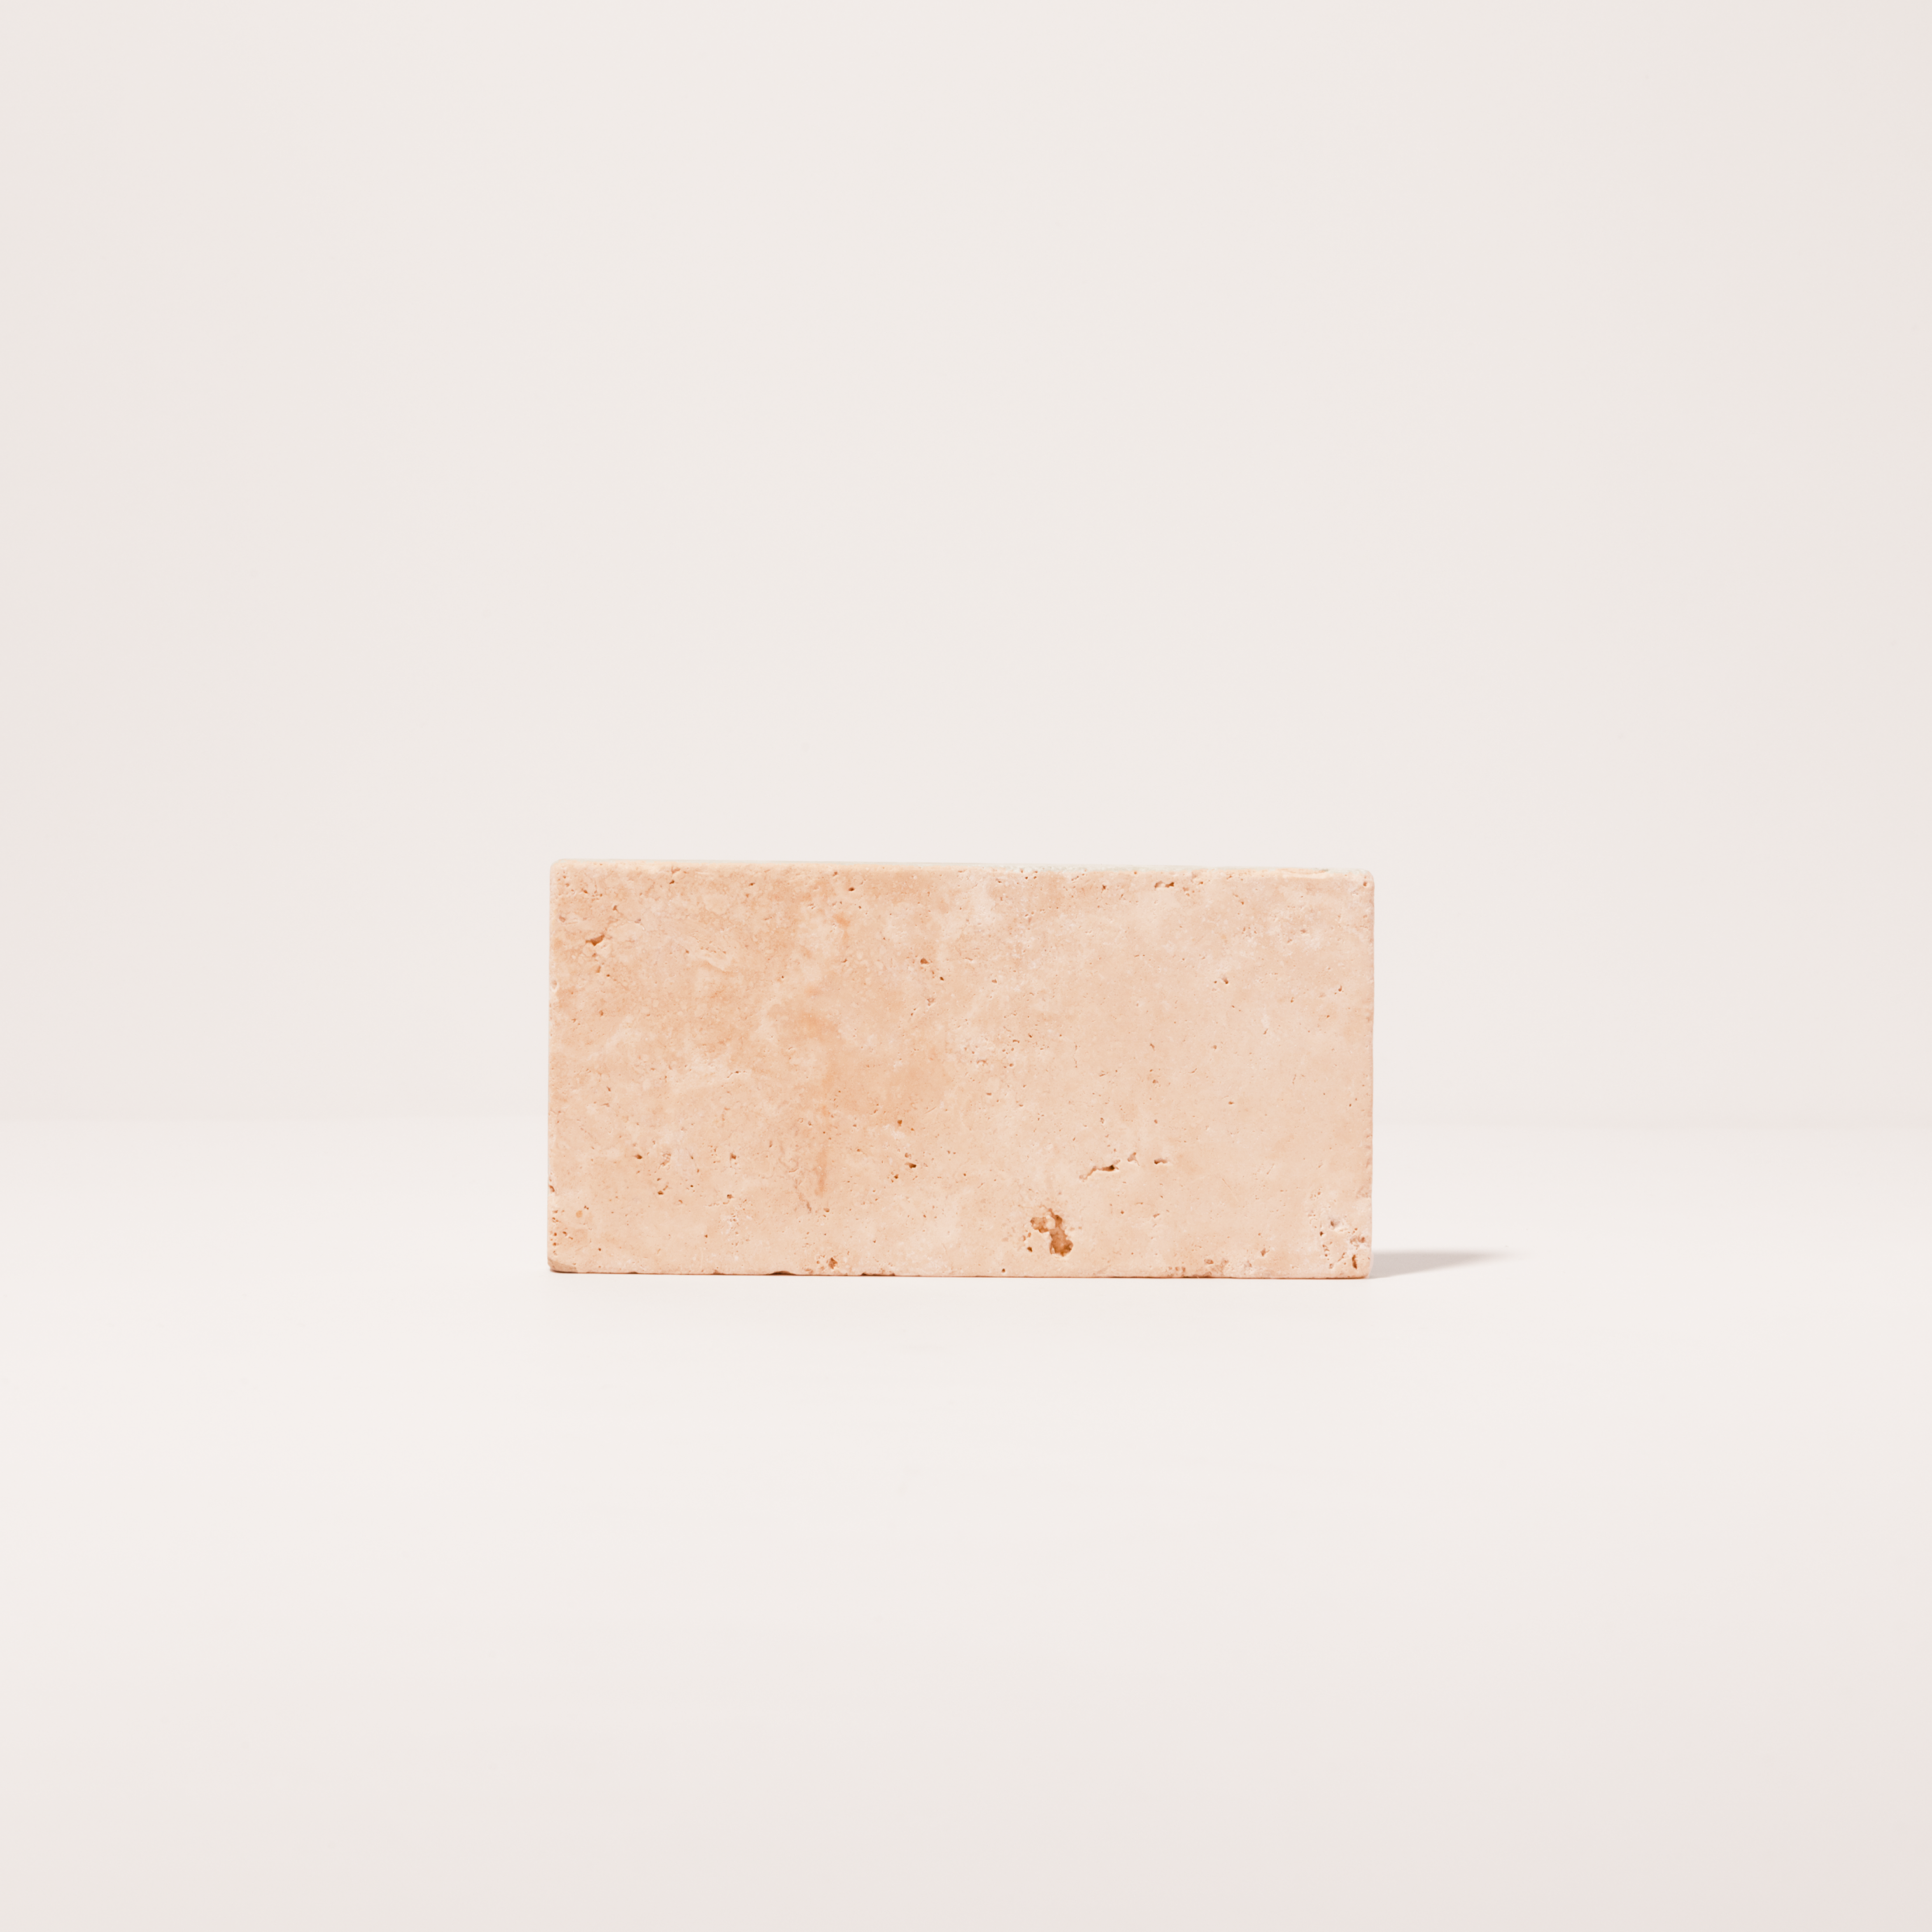 Base de piedra minimalista